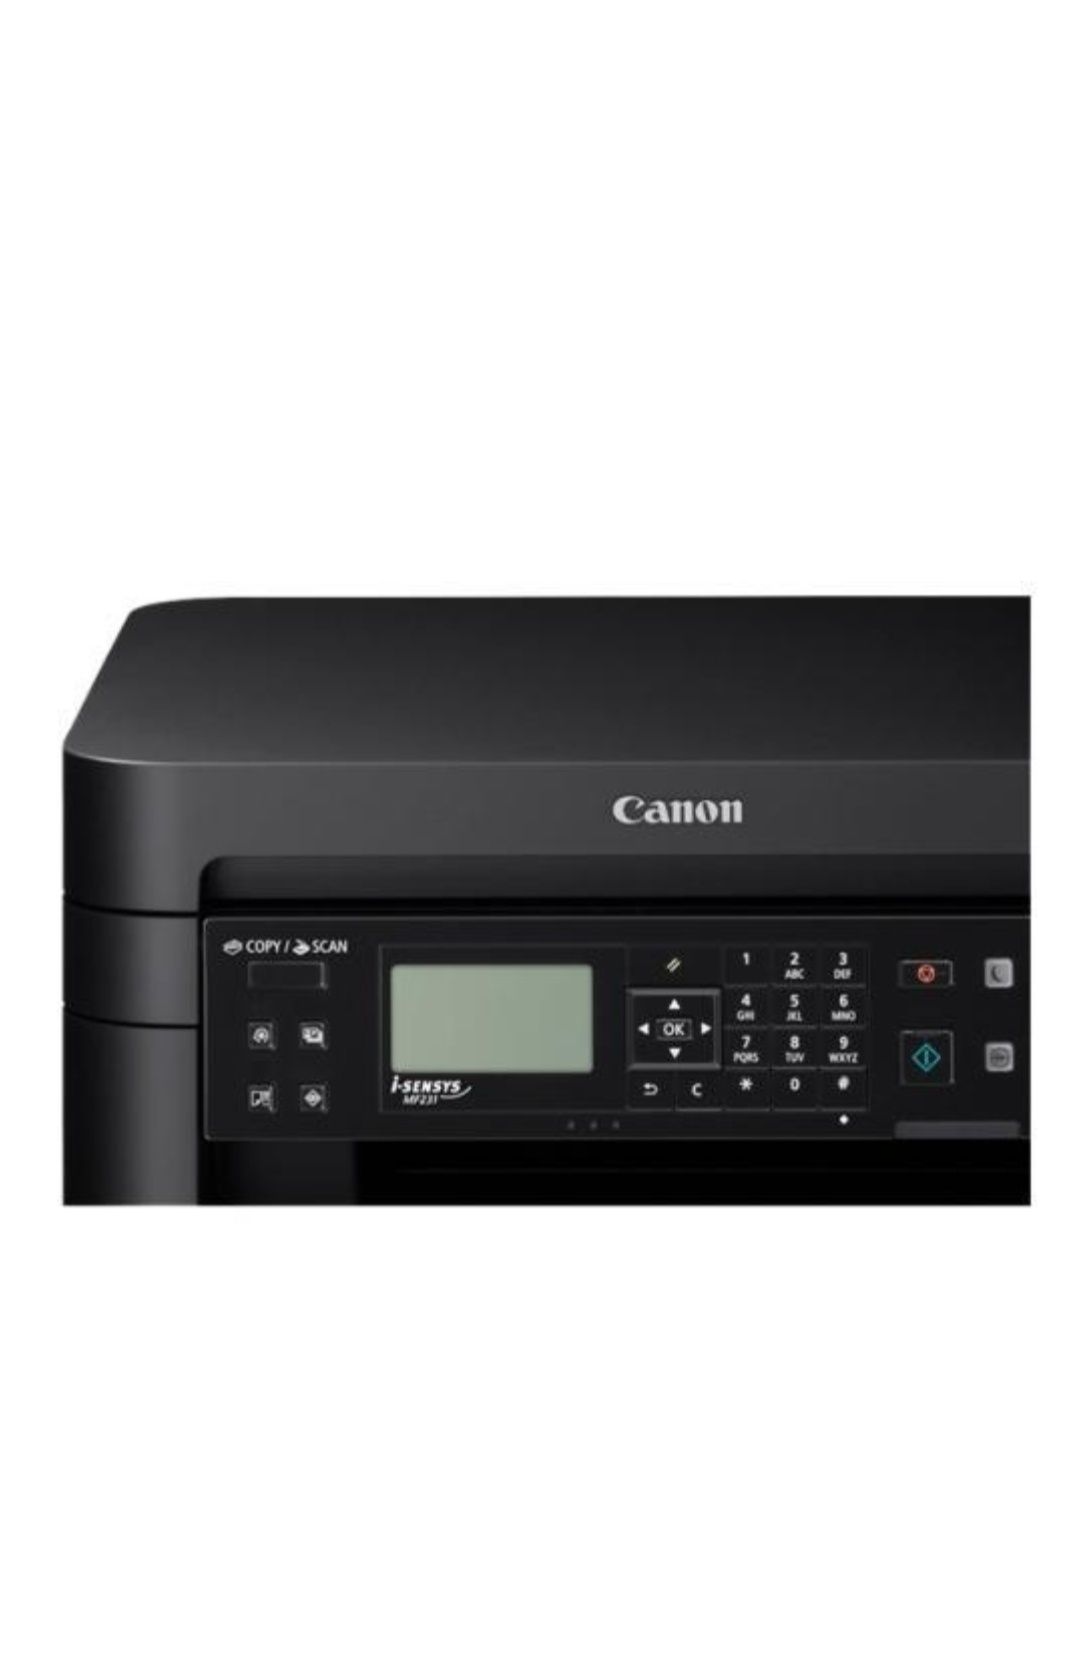 Принтер 3 в 1 МФУ Canon i-SENSYS MF231:
Новая модель многофункциональн